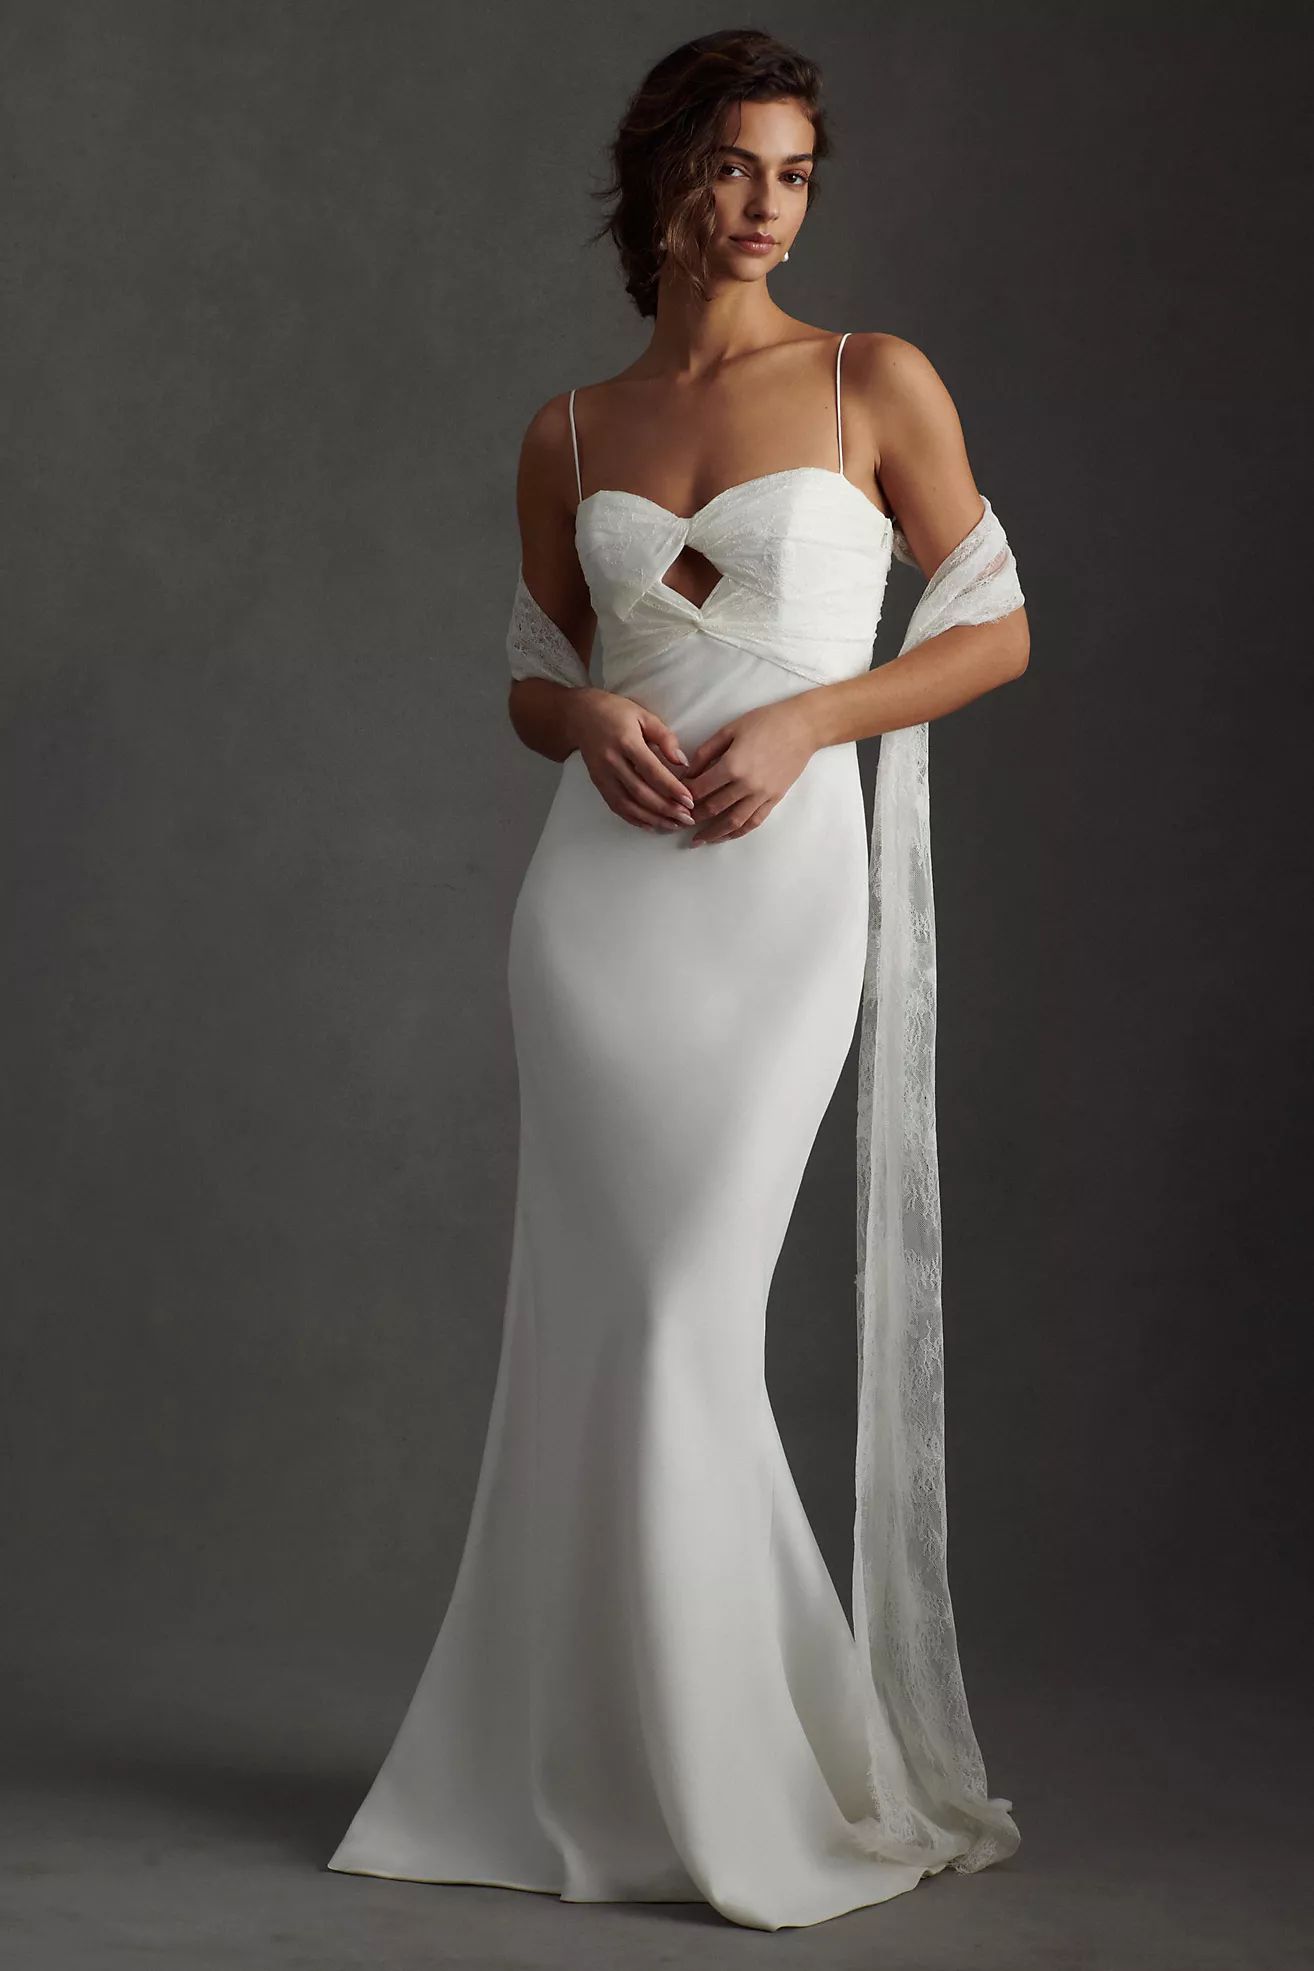 Savannah Miller Emmy Sweetheart Mermaid Wedding Gown | Anthropologie (US)